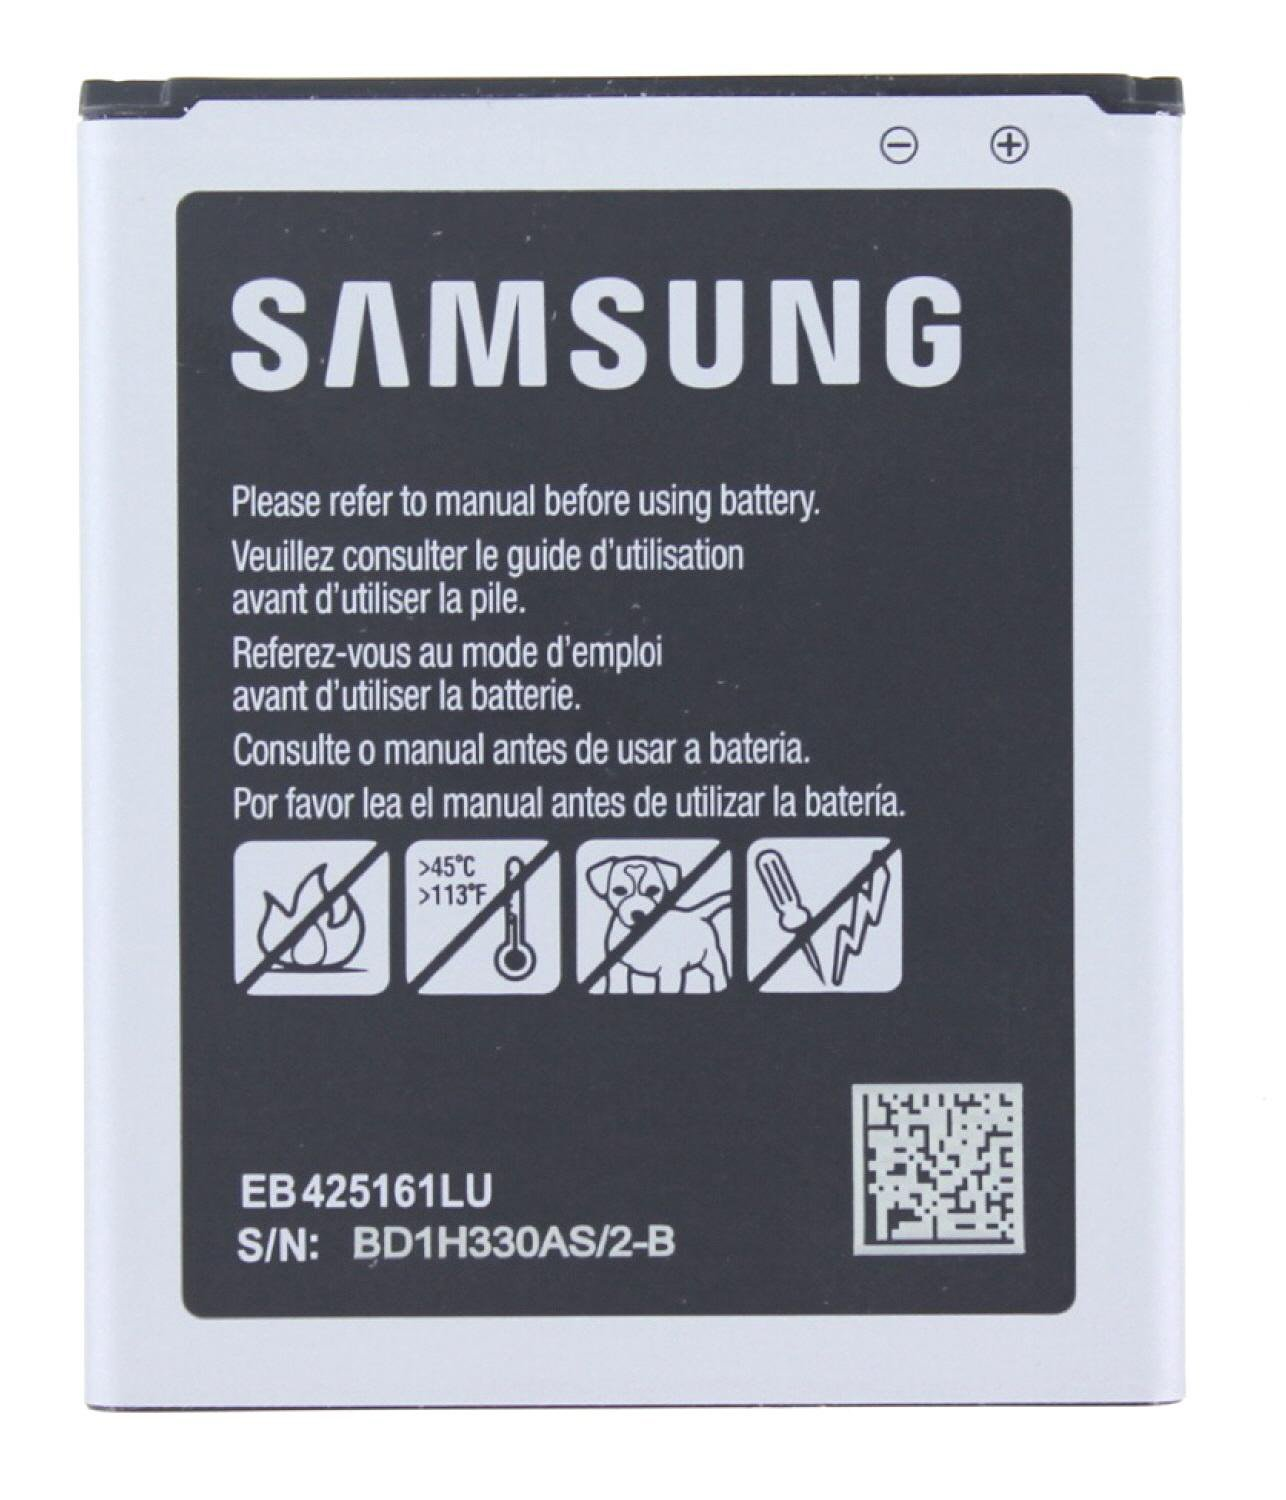 Li-Ion 3.8 Original Samsung GT-S7562 Volt, mAh Akku Handy-/Smartphoneakku, für SAMSUNG 1500